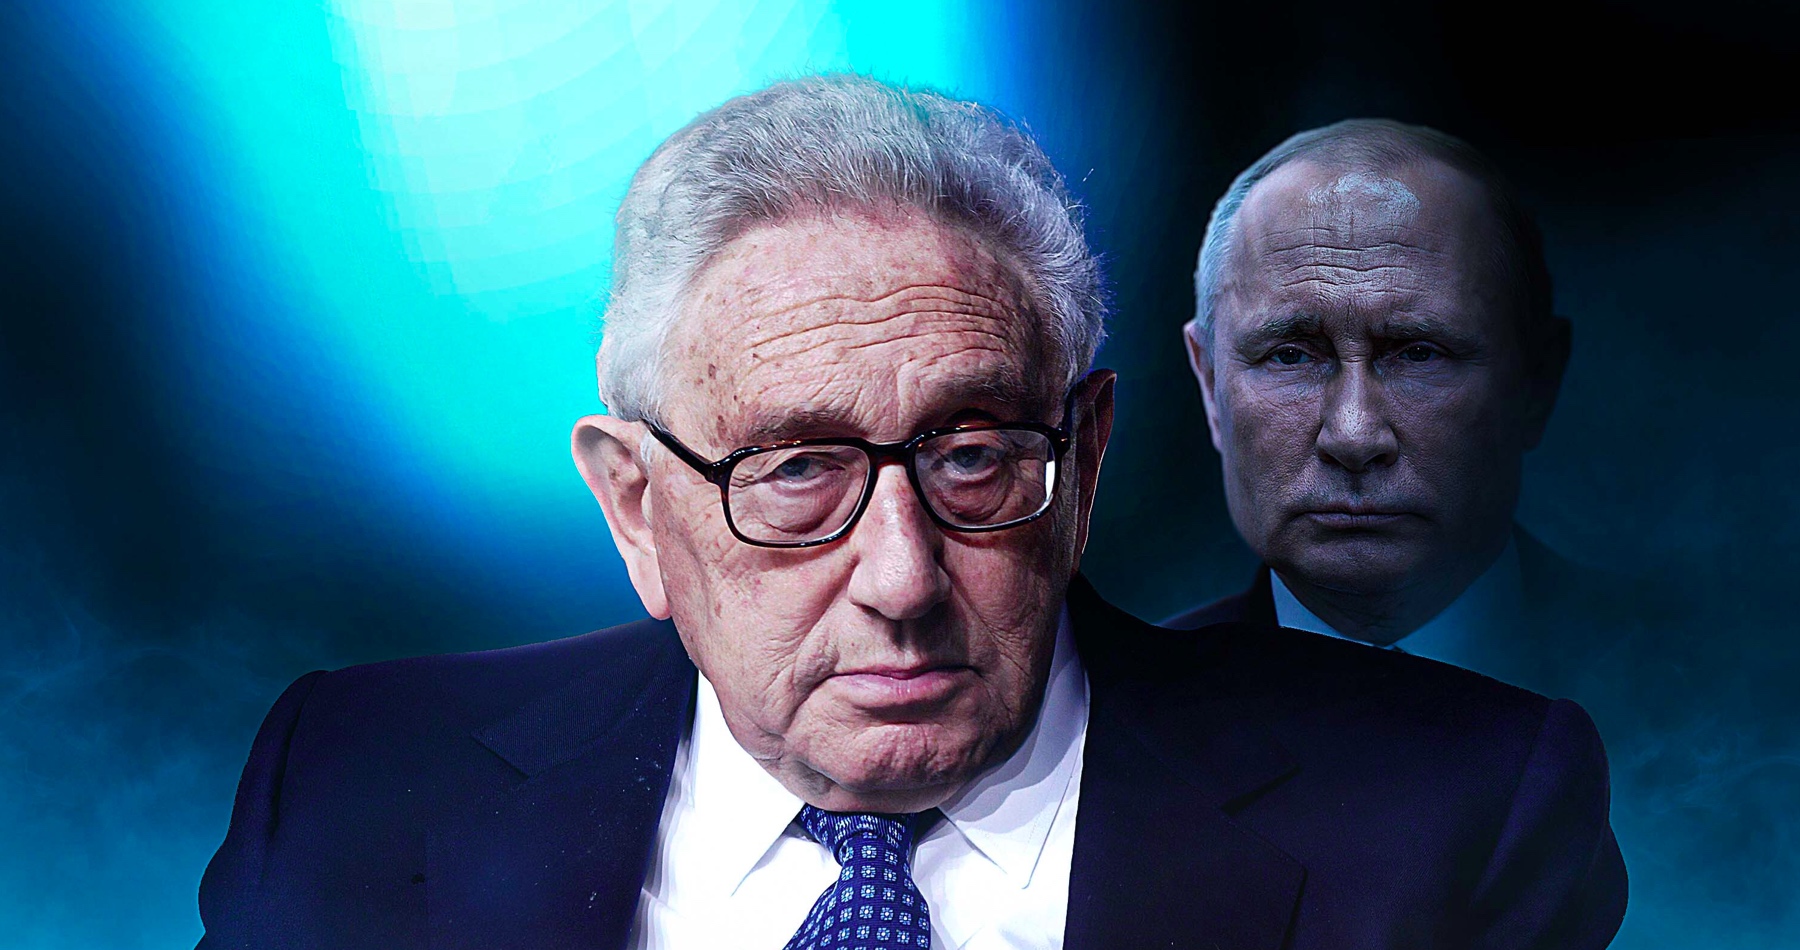 Kissinger rozvinul svoji tezi z Davosu: Ukrajinci budou muset udělat ústupky. Jsou tři východiska z téhle války